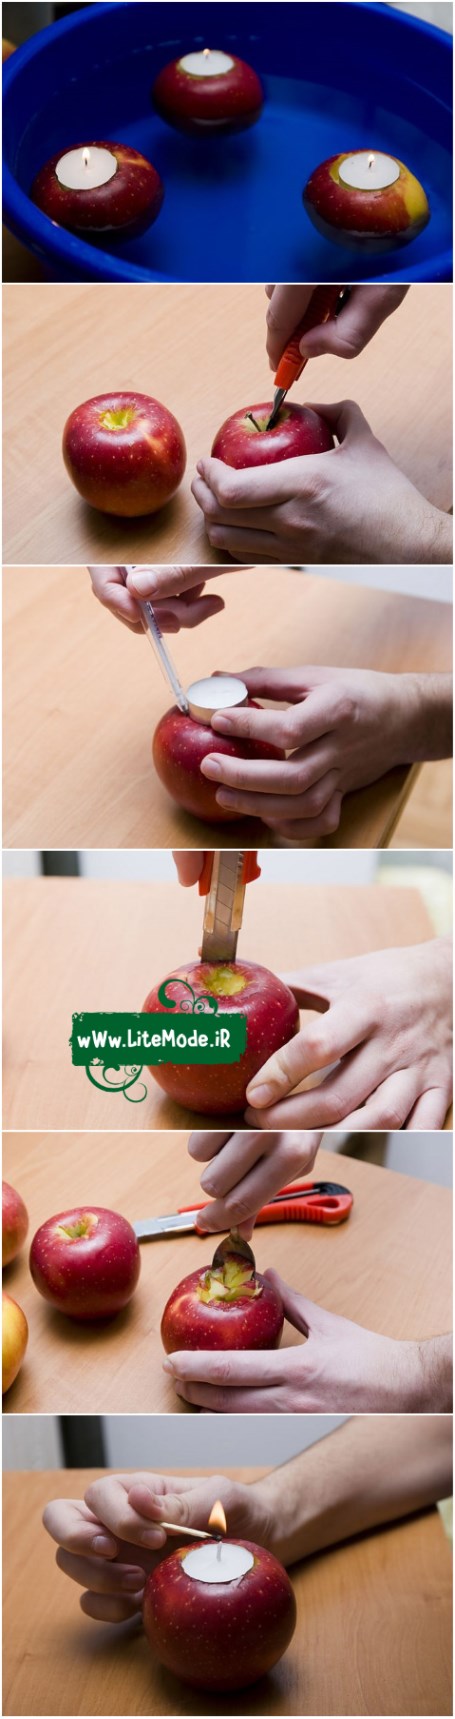 آموزش جاشمعی سیب 